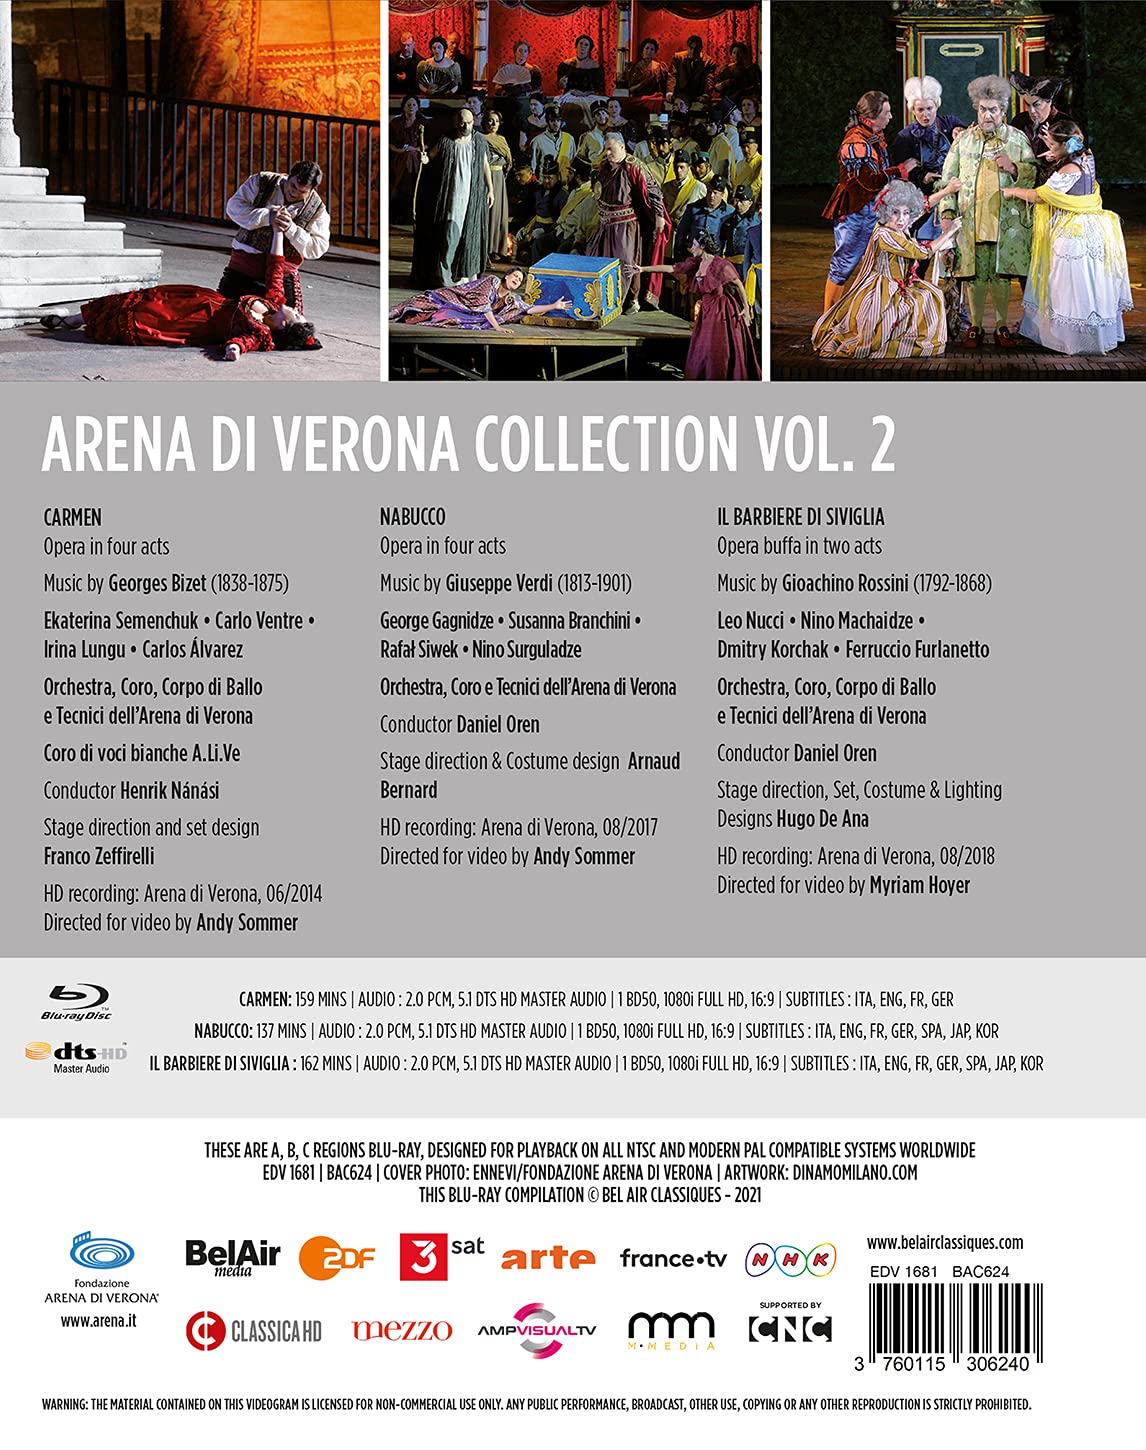 베로나 페스티벌 실황 (Arena Di Verona Collection Vol. 2)